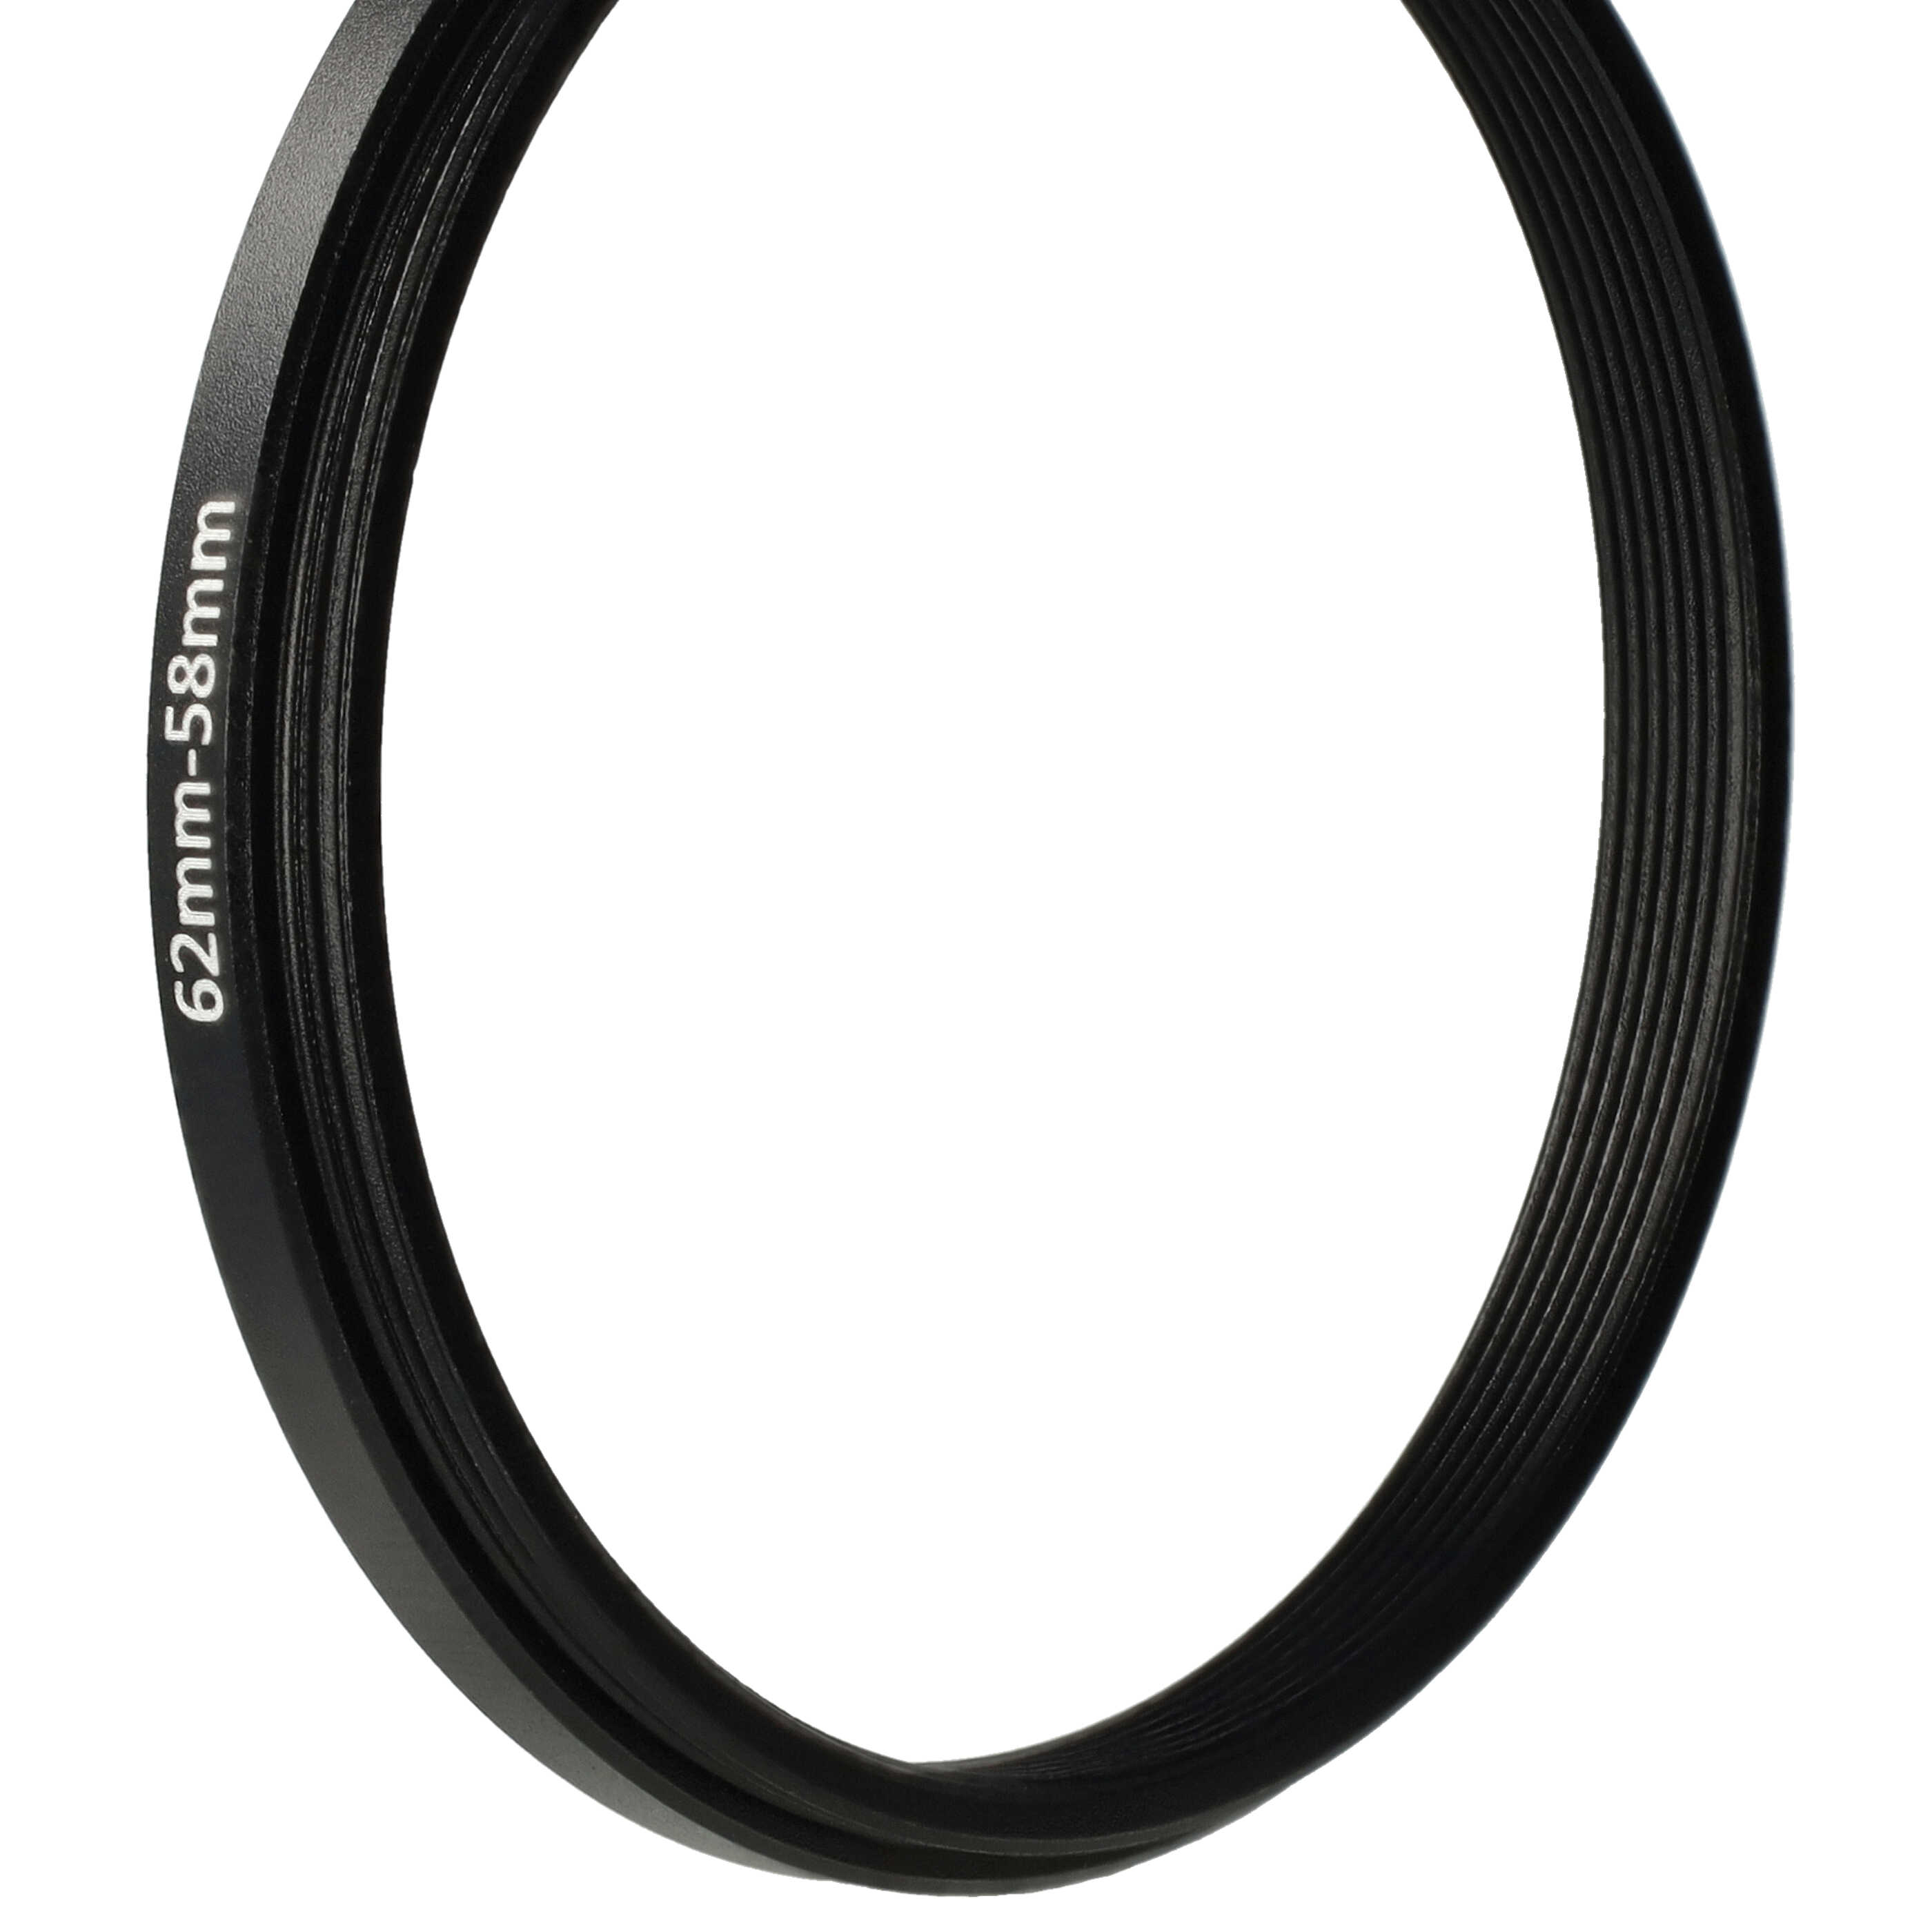 Anello adattatore step-down da 62 mm a 58 mm per obiettivo fotocamera - Adattatore filtro, metallo, nero